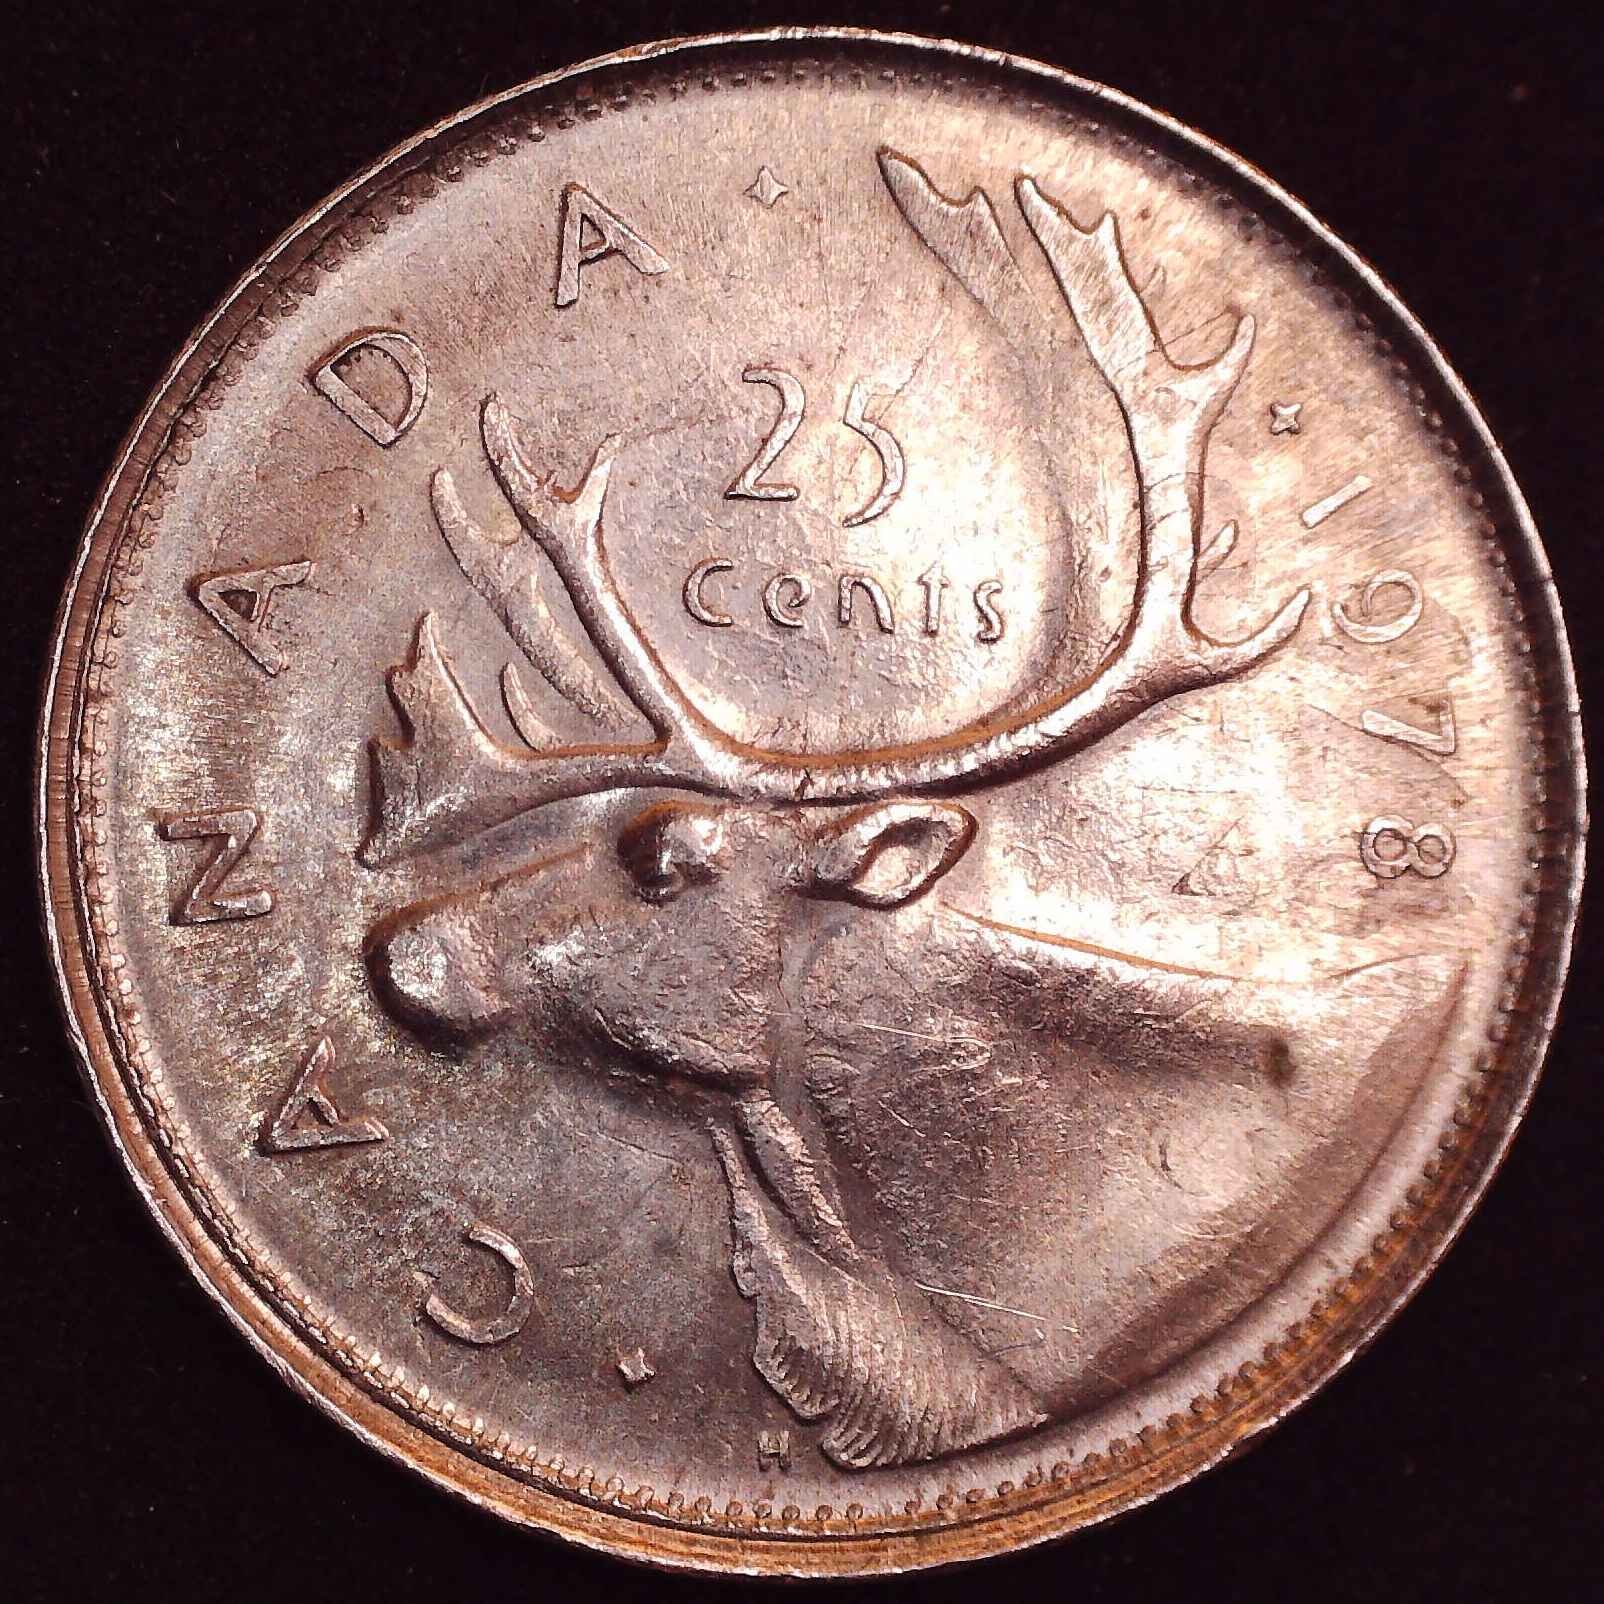 C_25c 1978 sur 5 cents 1975 - 6.jpg